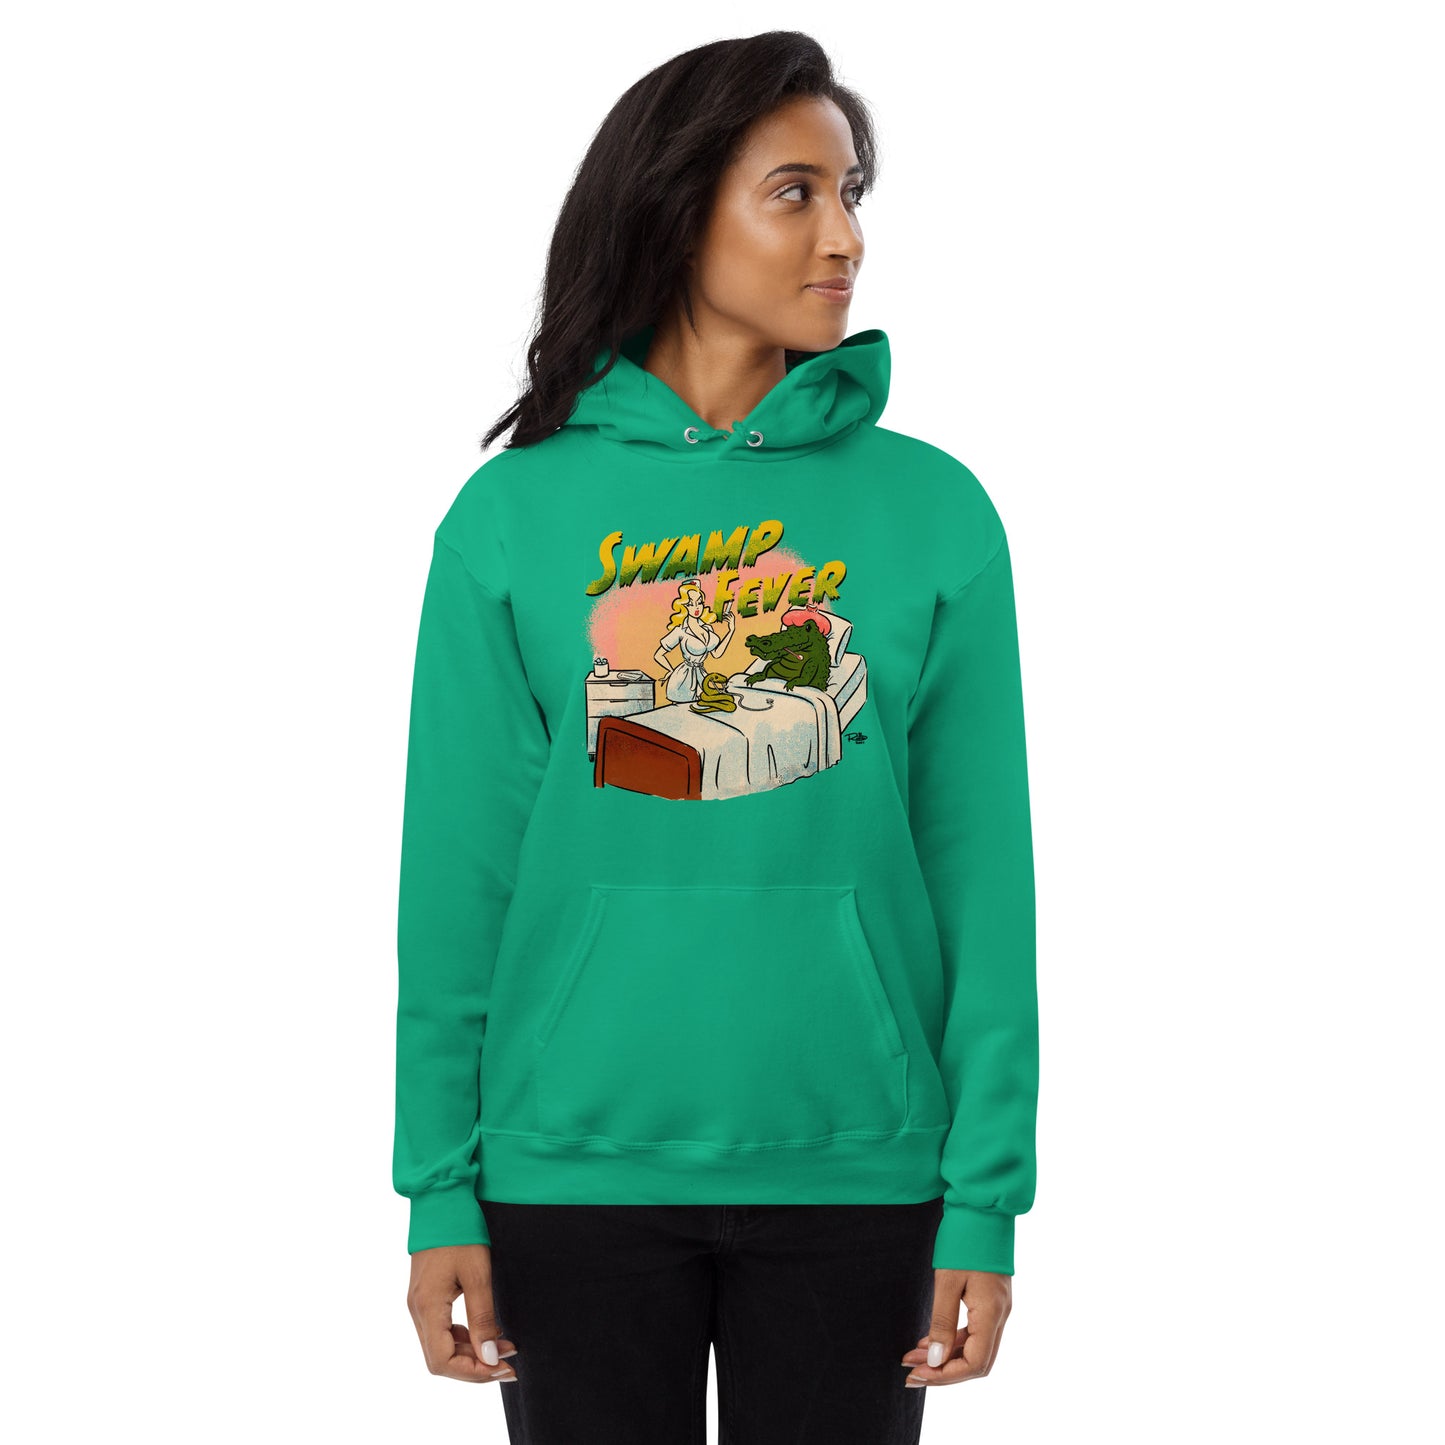 Elly May Swamp Fever Unisex fleece hoodie